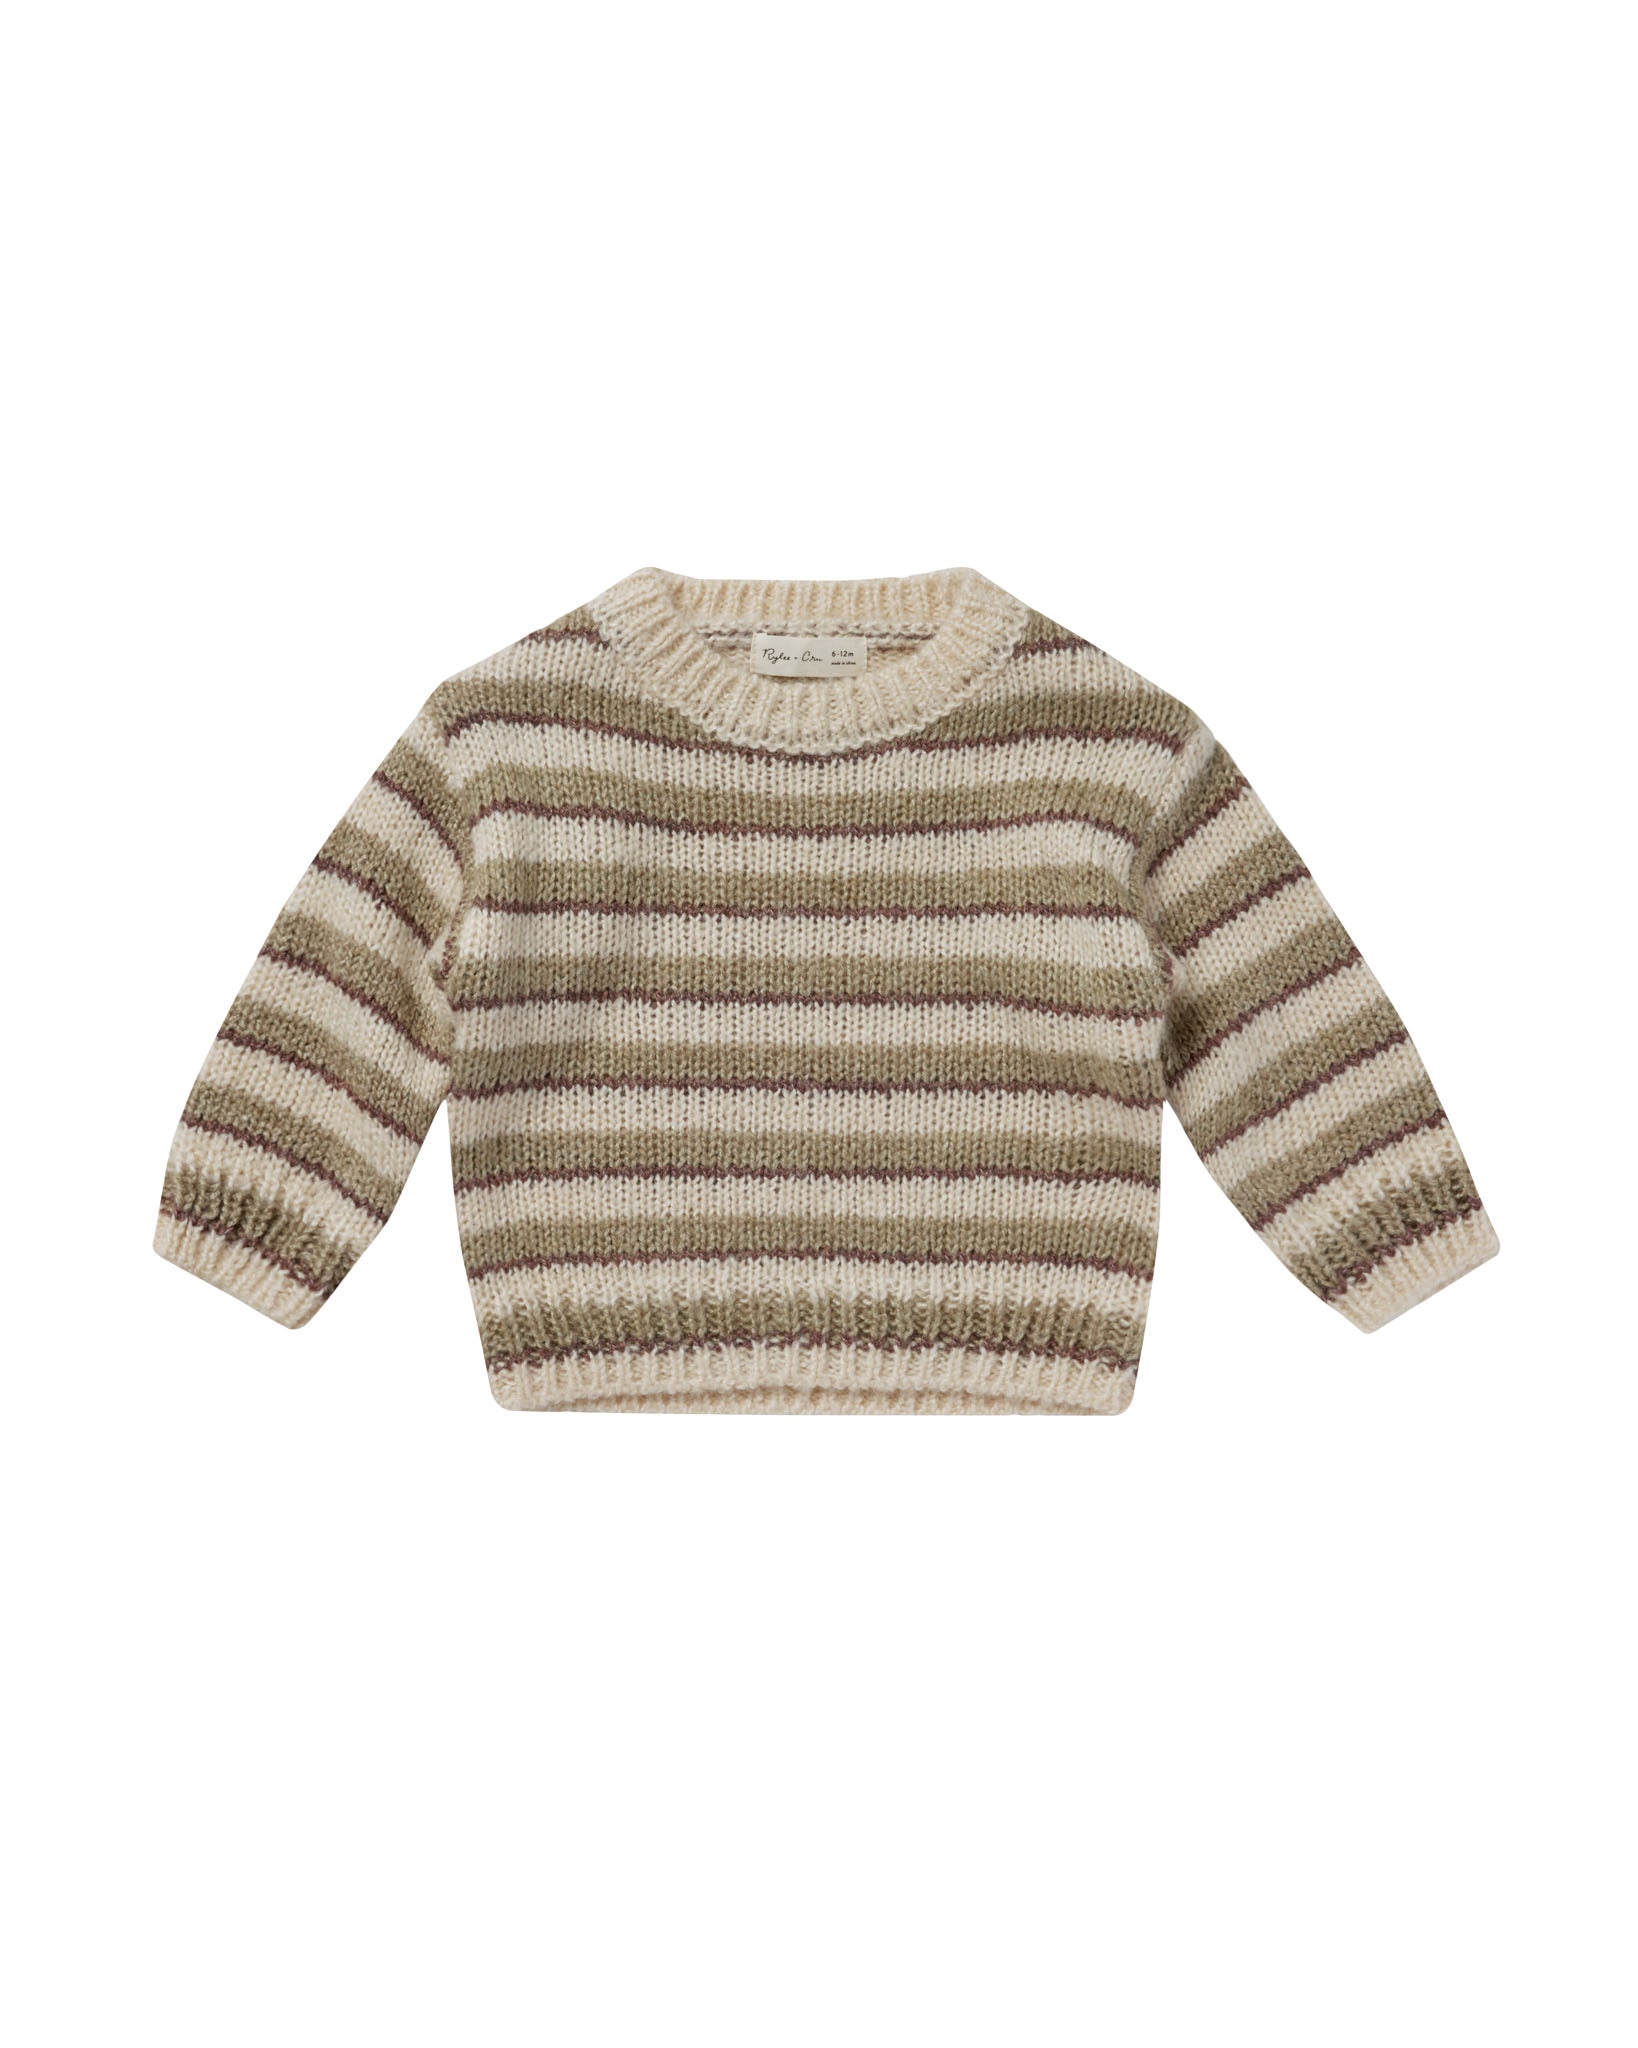 Rylee & Cru | Aspen Sweater | Fall Stripe